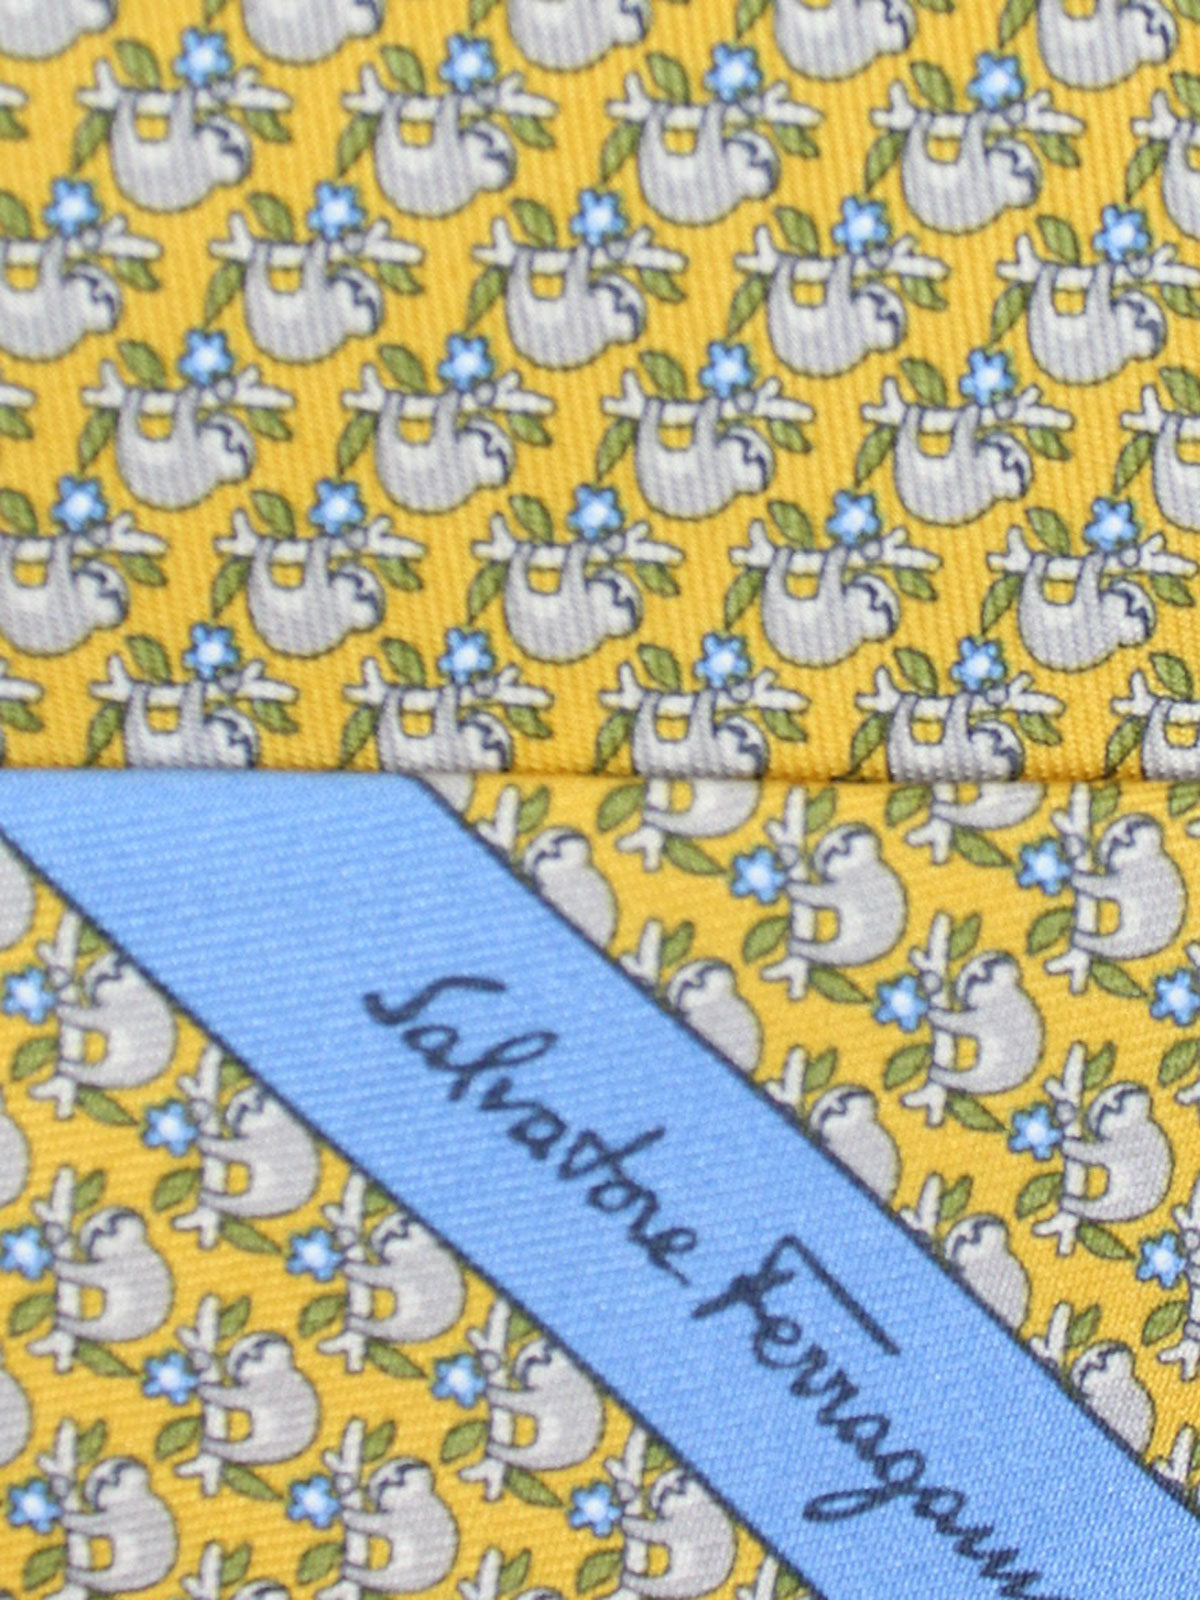 Salvatore Ferragamo Tie Yellow Koala Design Novelty